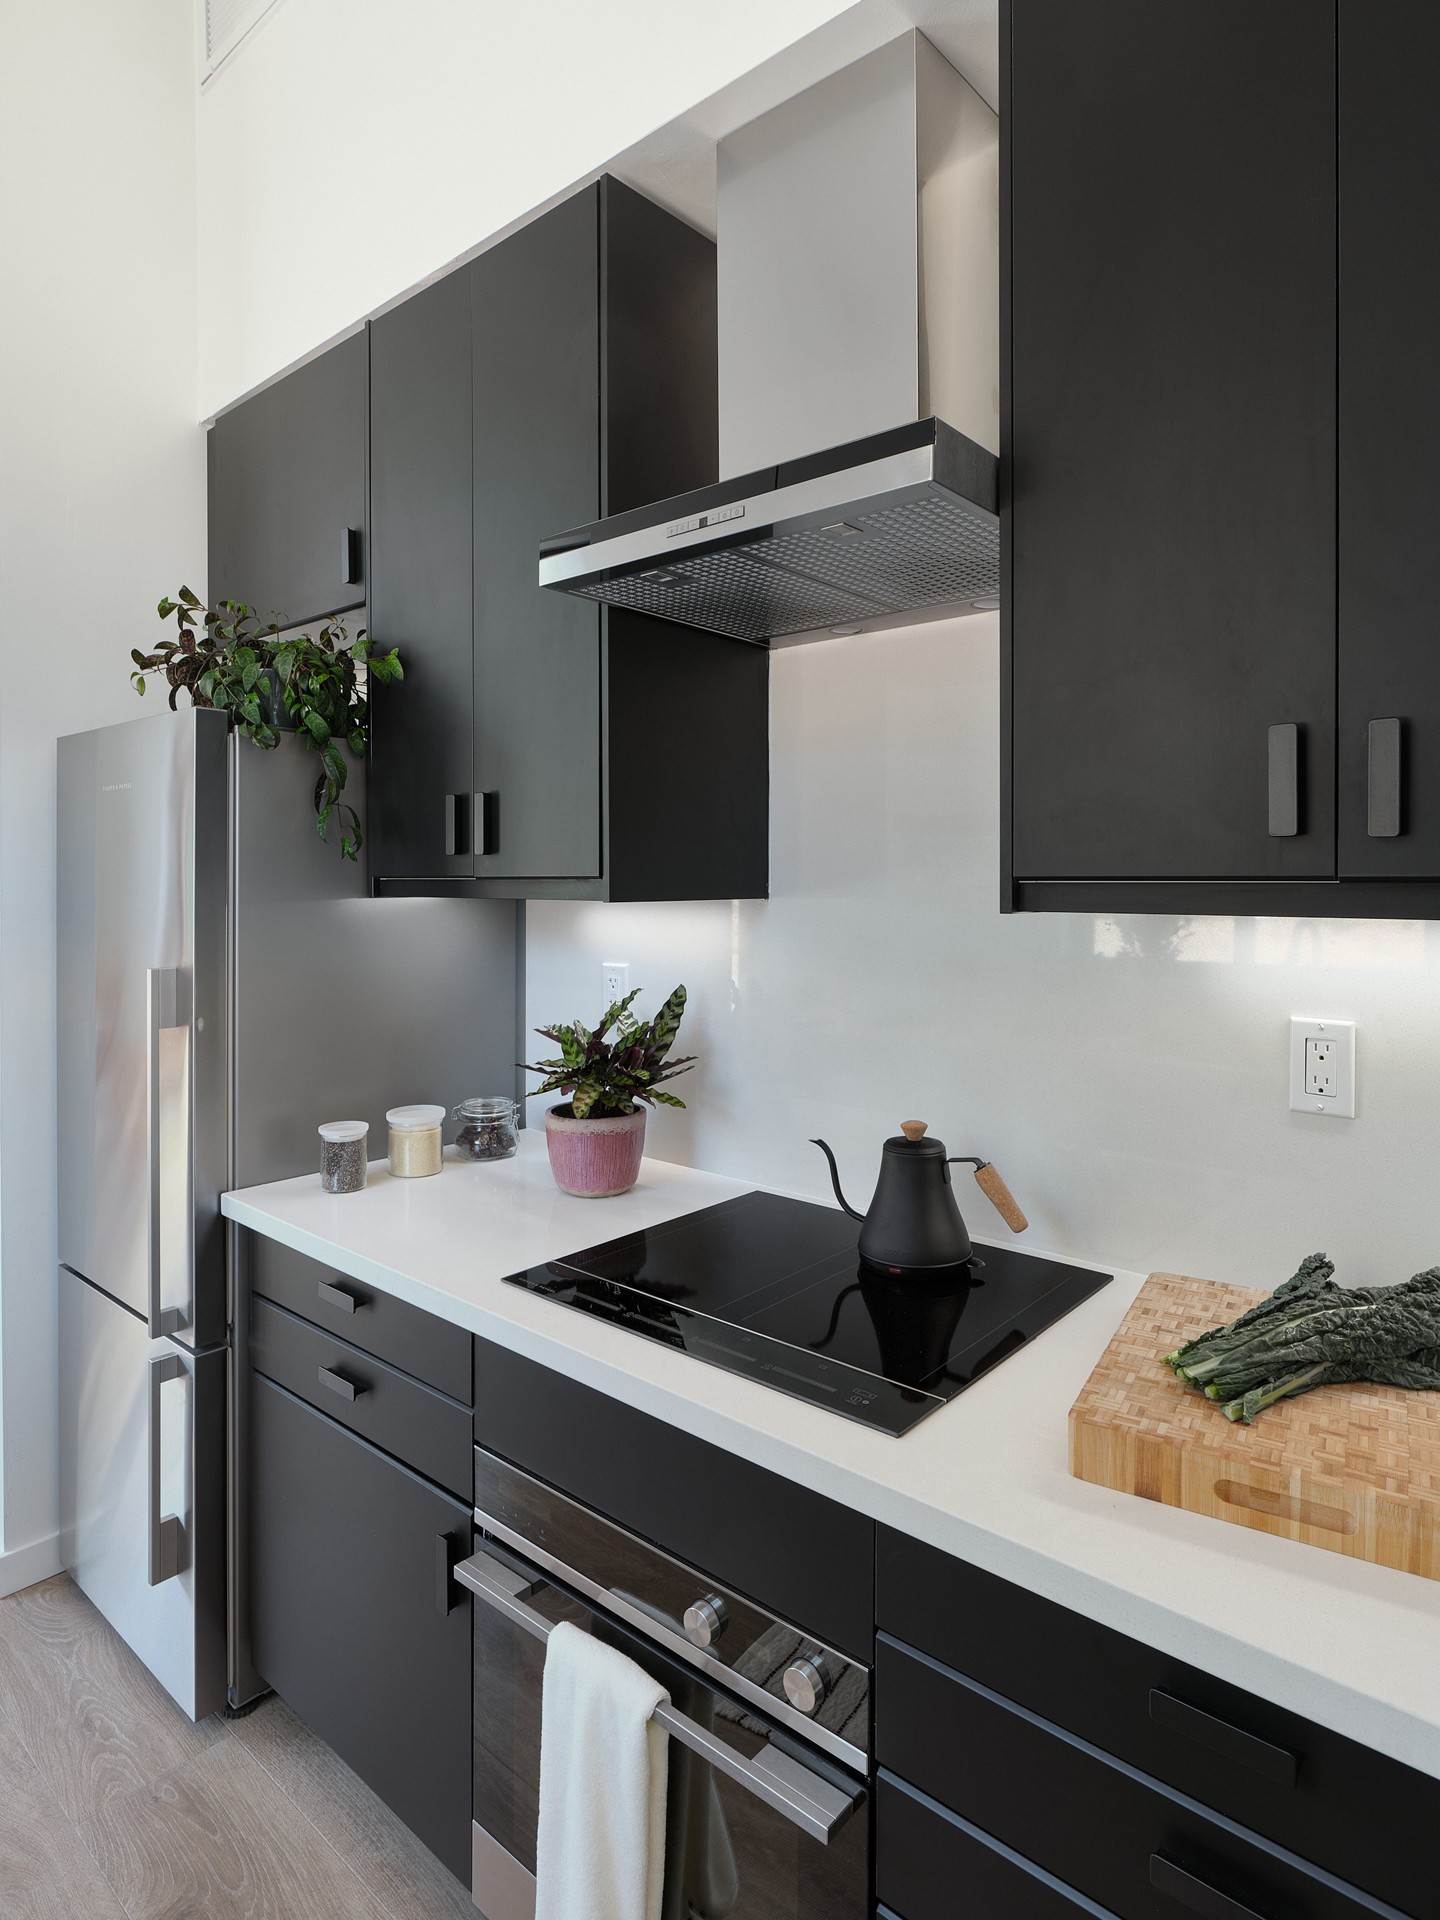 Décor do dia: cozinha preta e minimalista para espaços pequenos (Foto: Joe Fletcher/Divulgação)